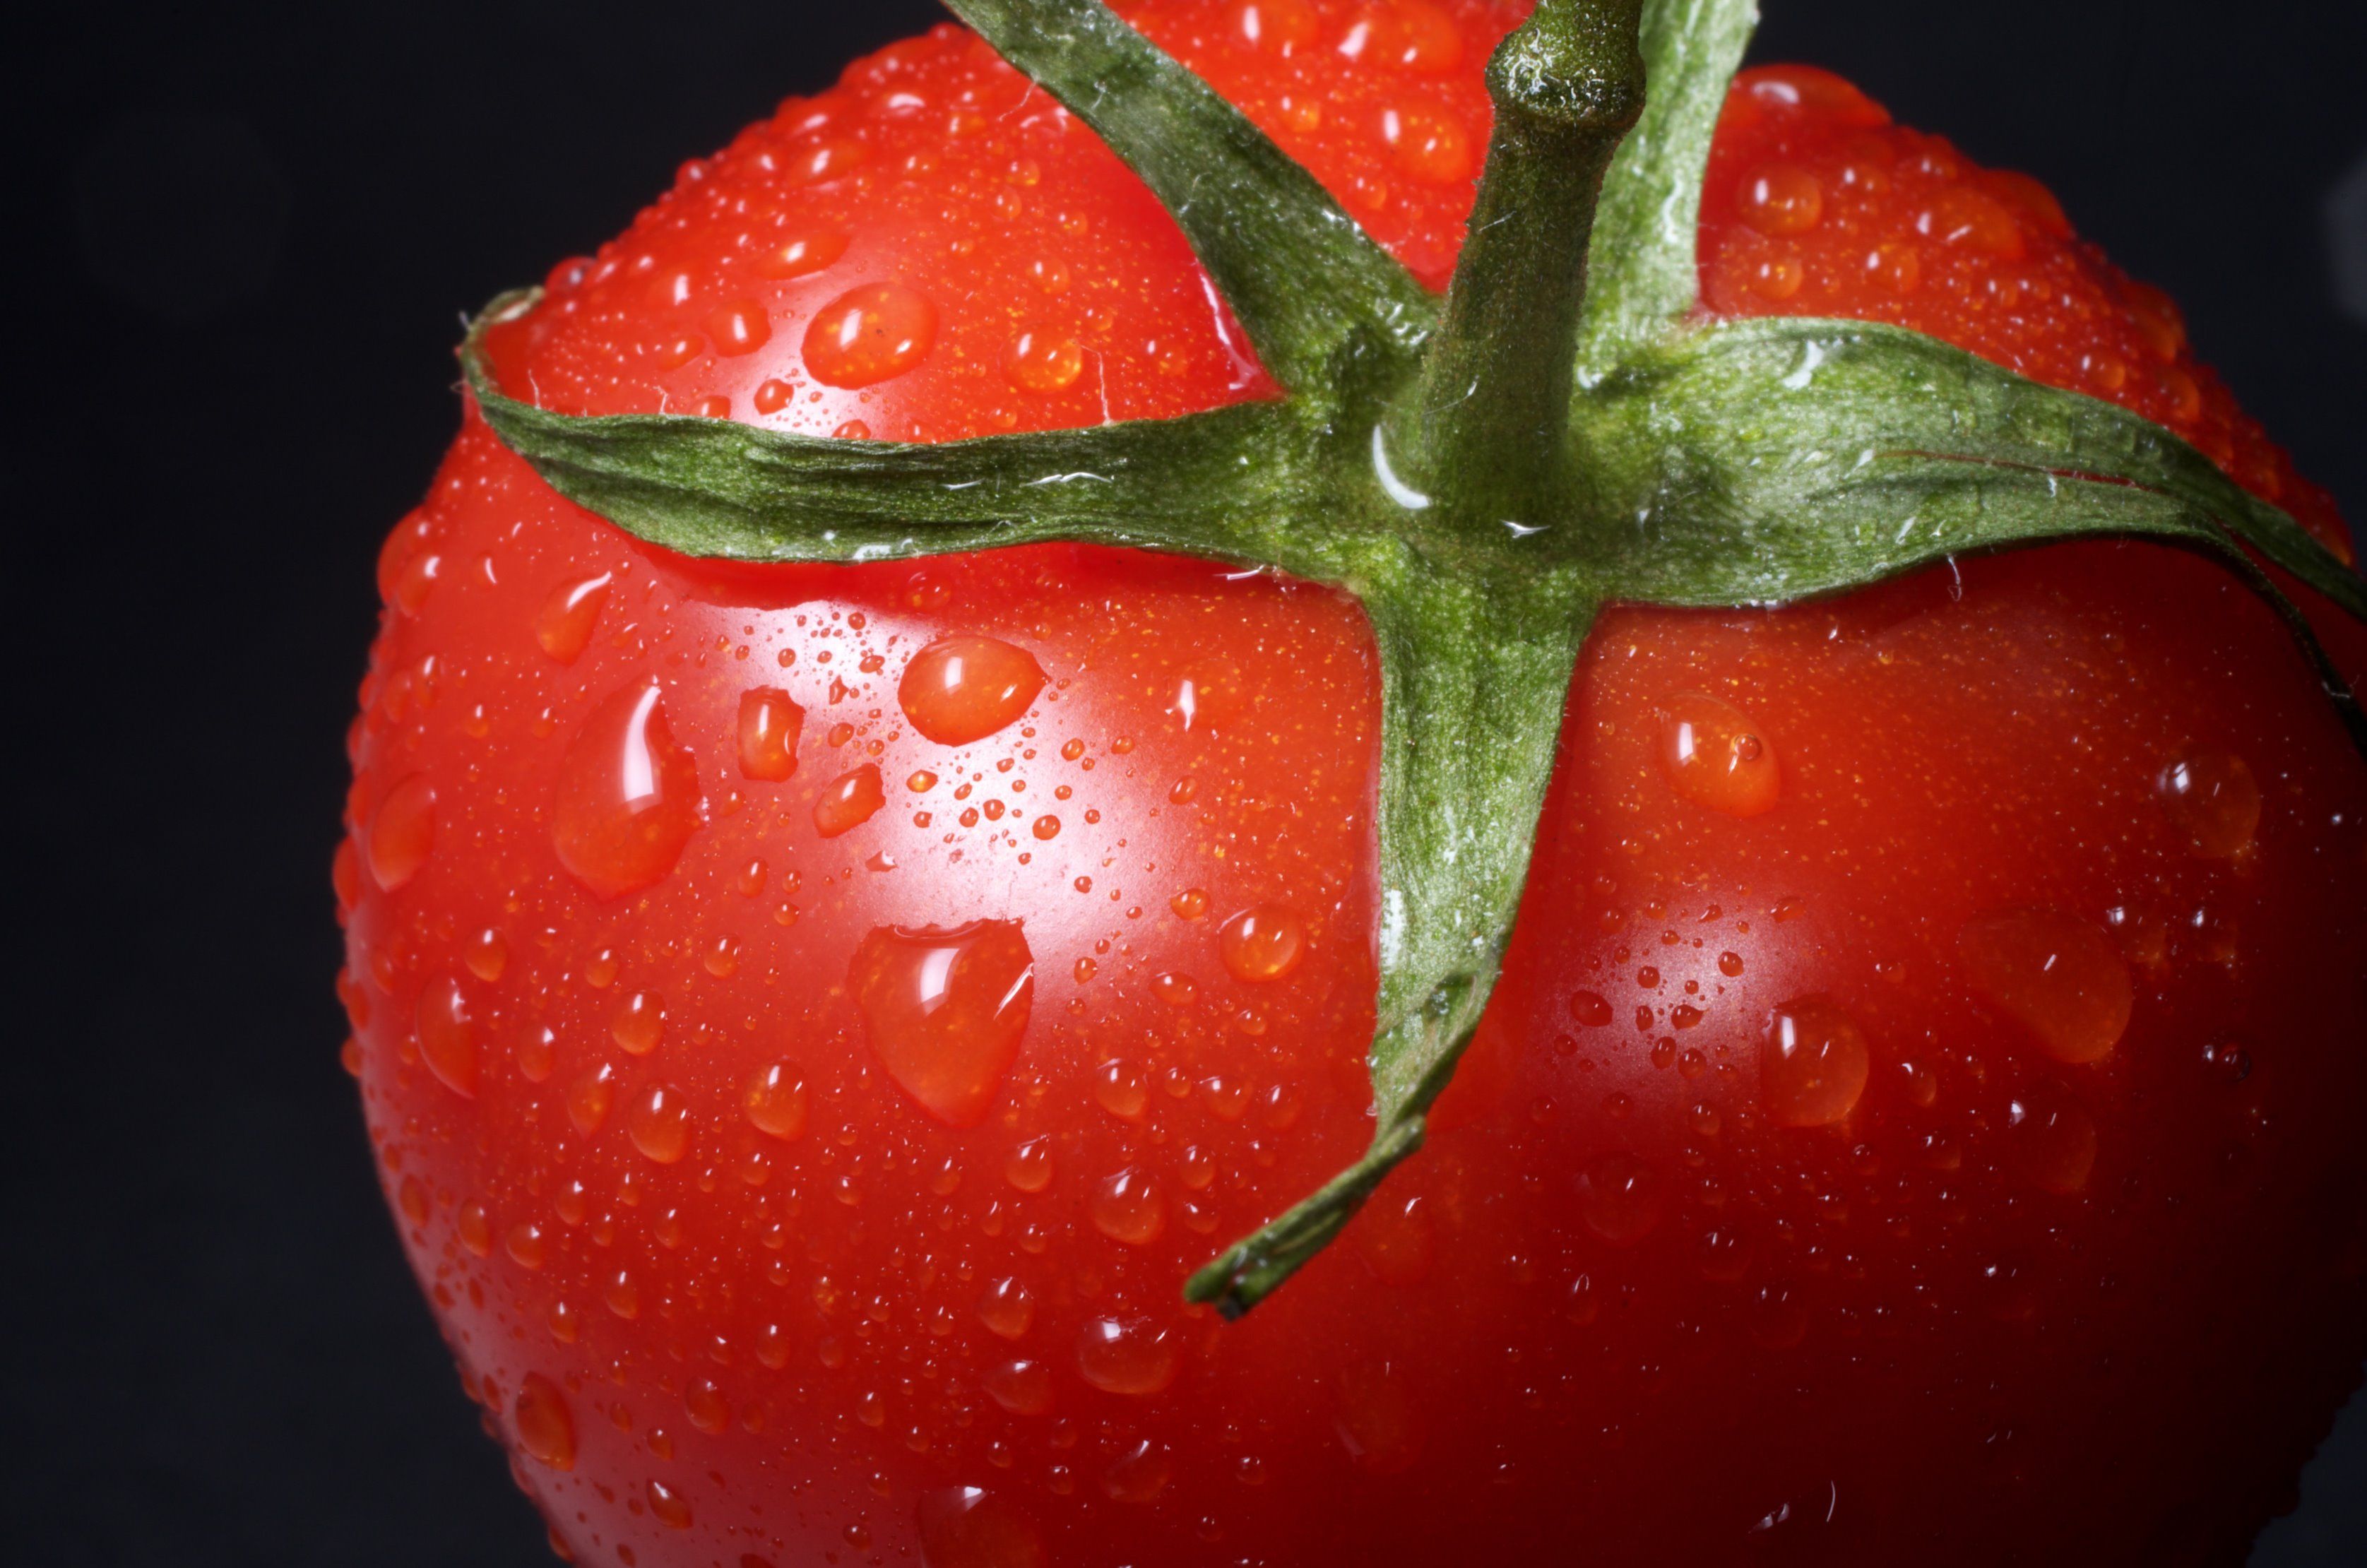 Bodega de los Secretos aporta 8 interesantes datos sobre el tomate